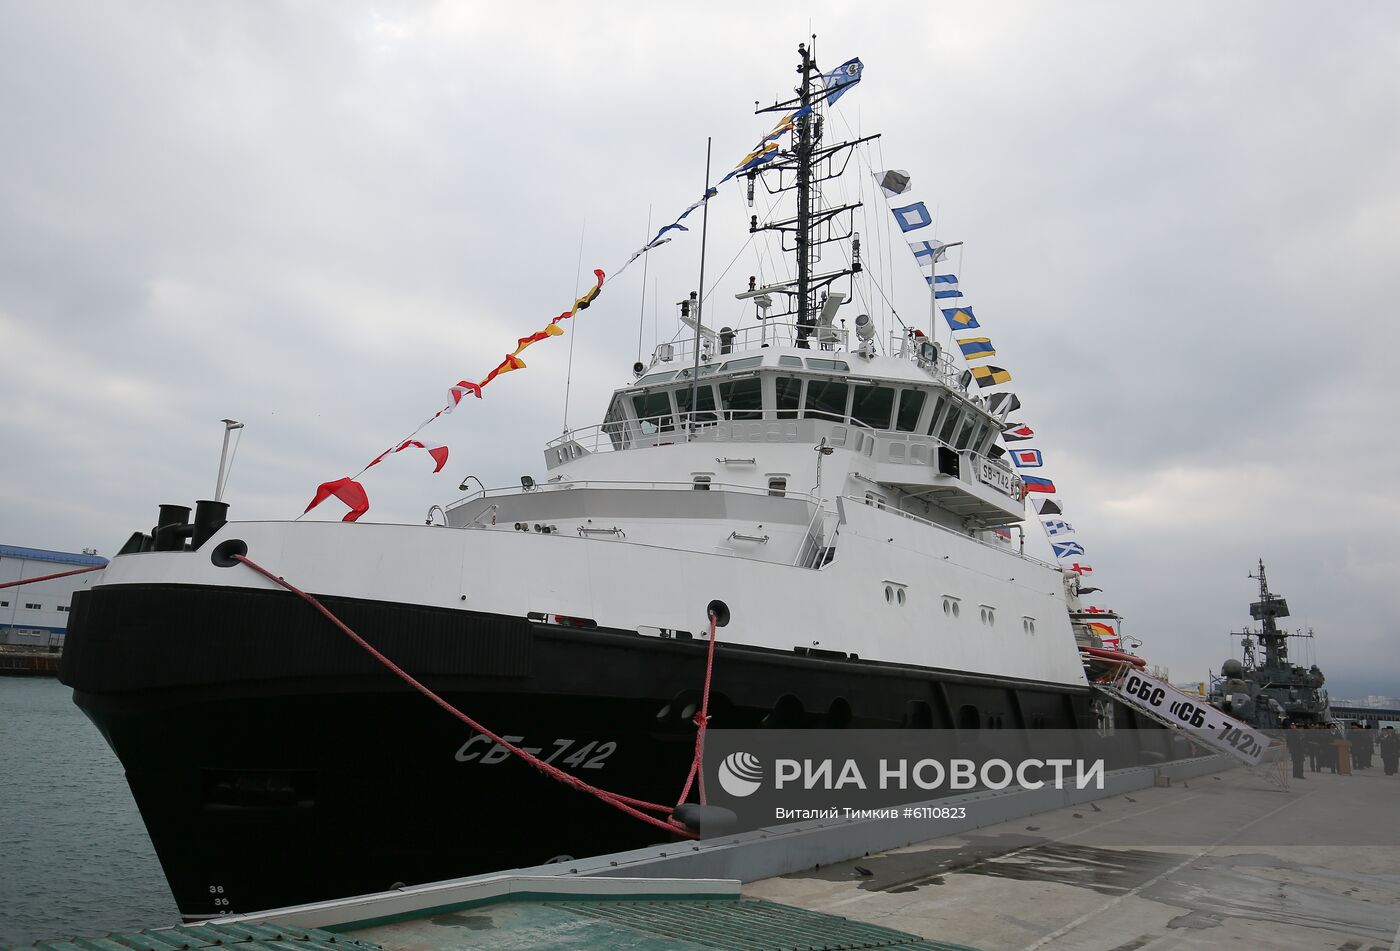 Поднятие Андреевского флага на спасательном буксире ЧФ "СБ-742"